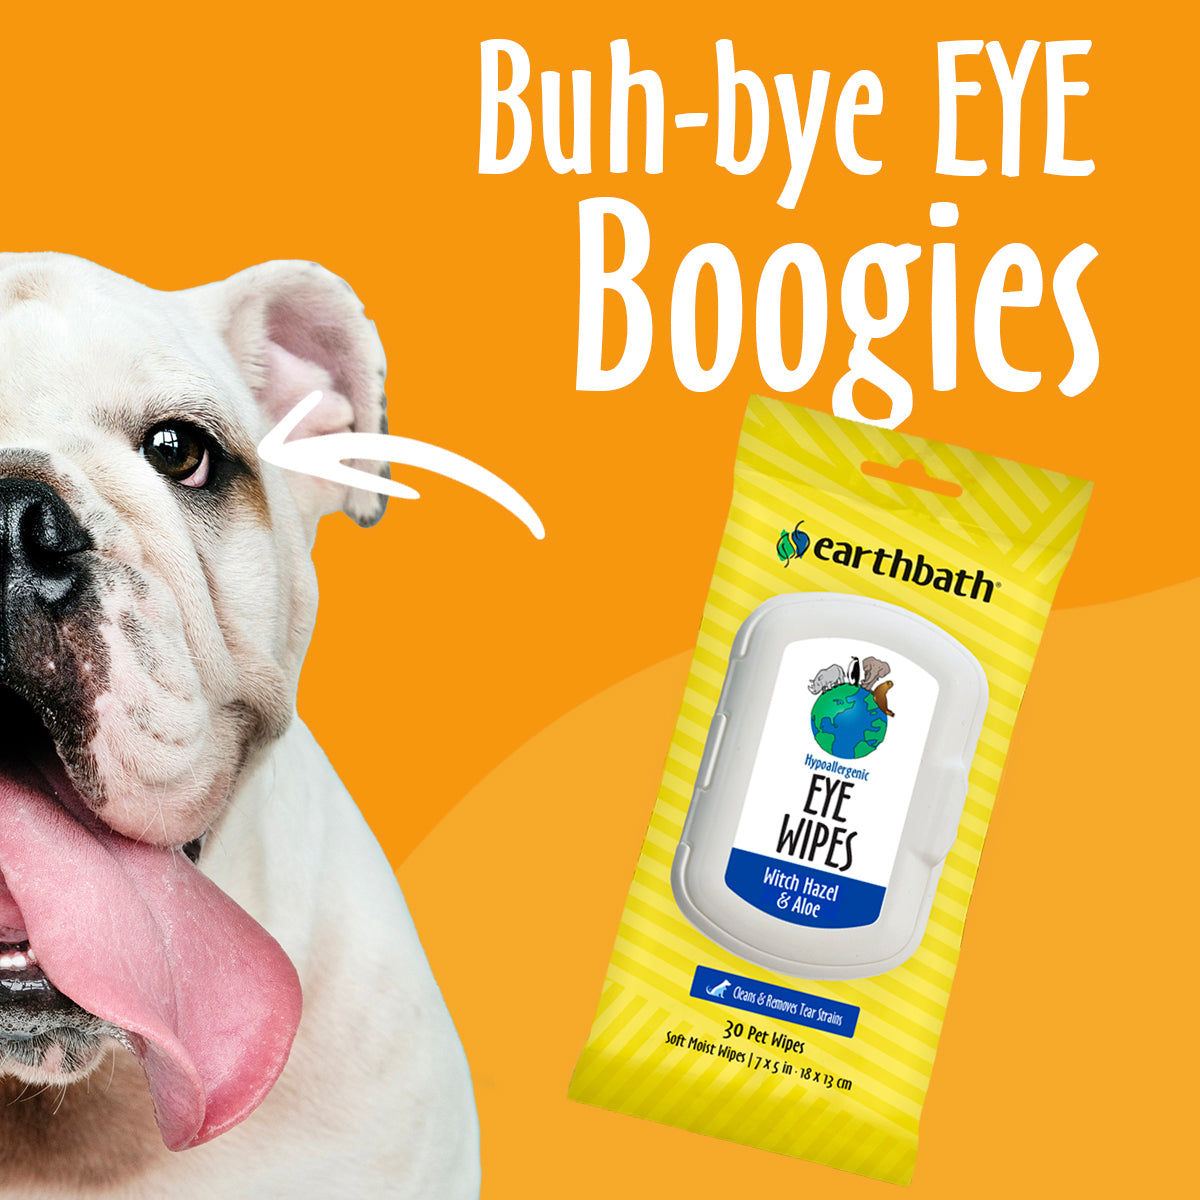 Buh-Bye Eye Boogies